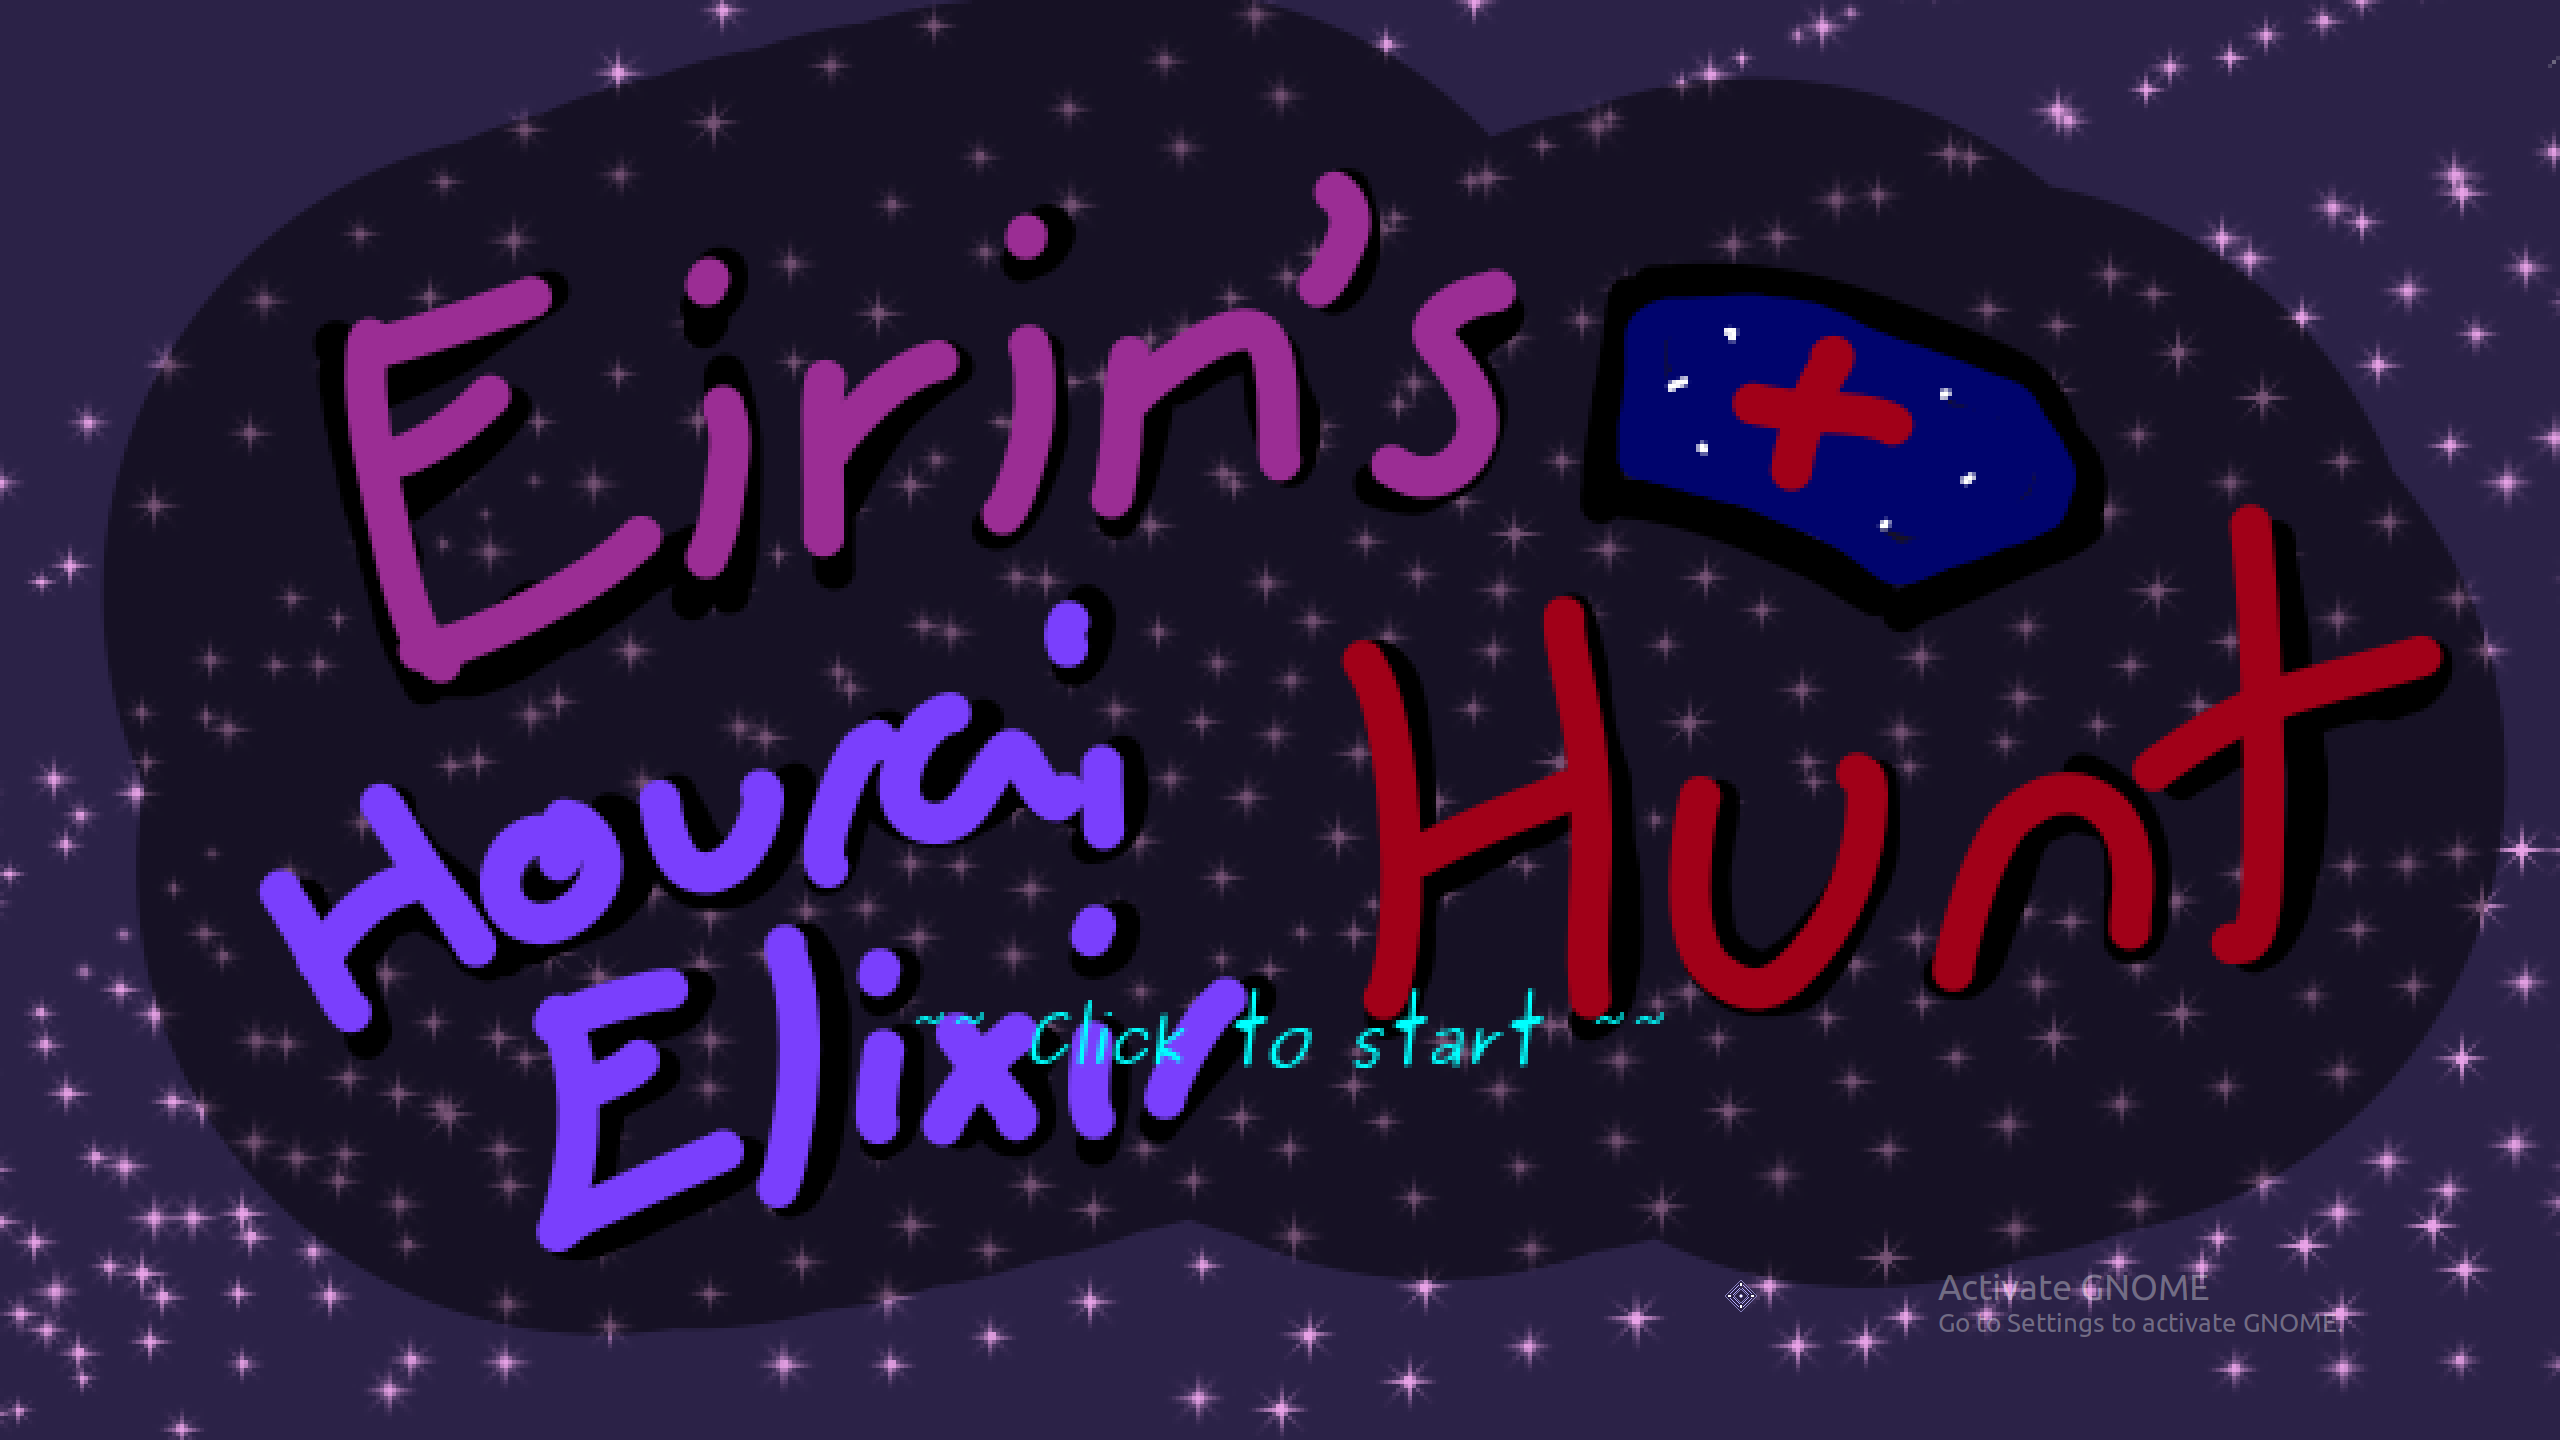 eirin's hourai elixir hunt